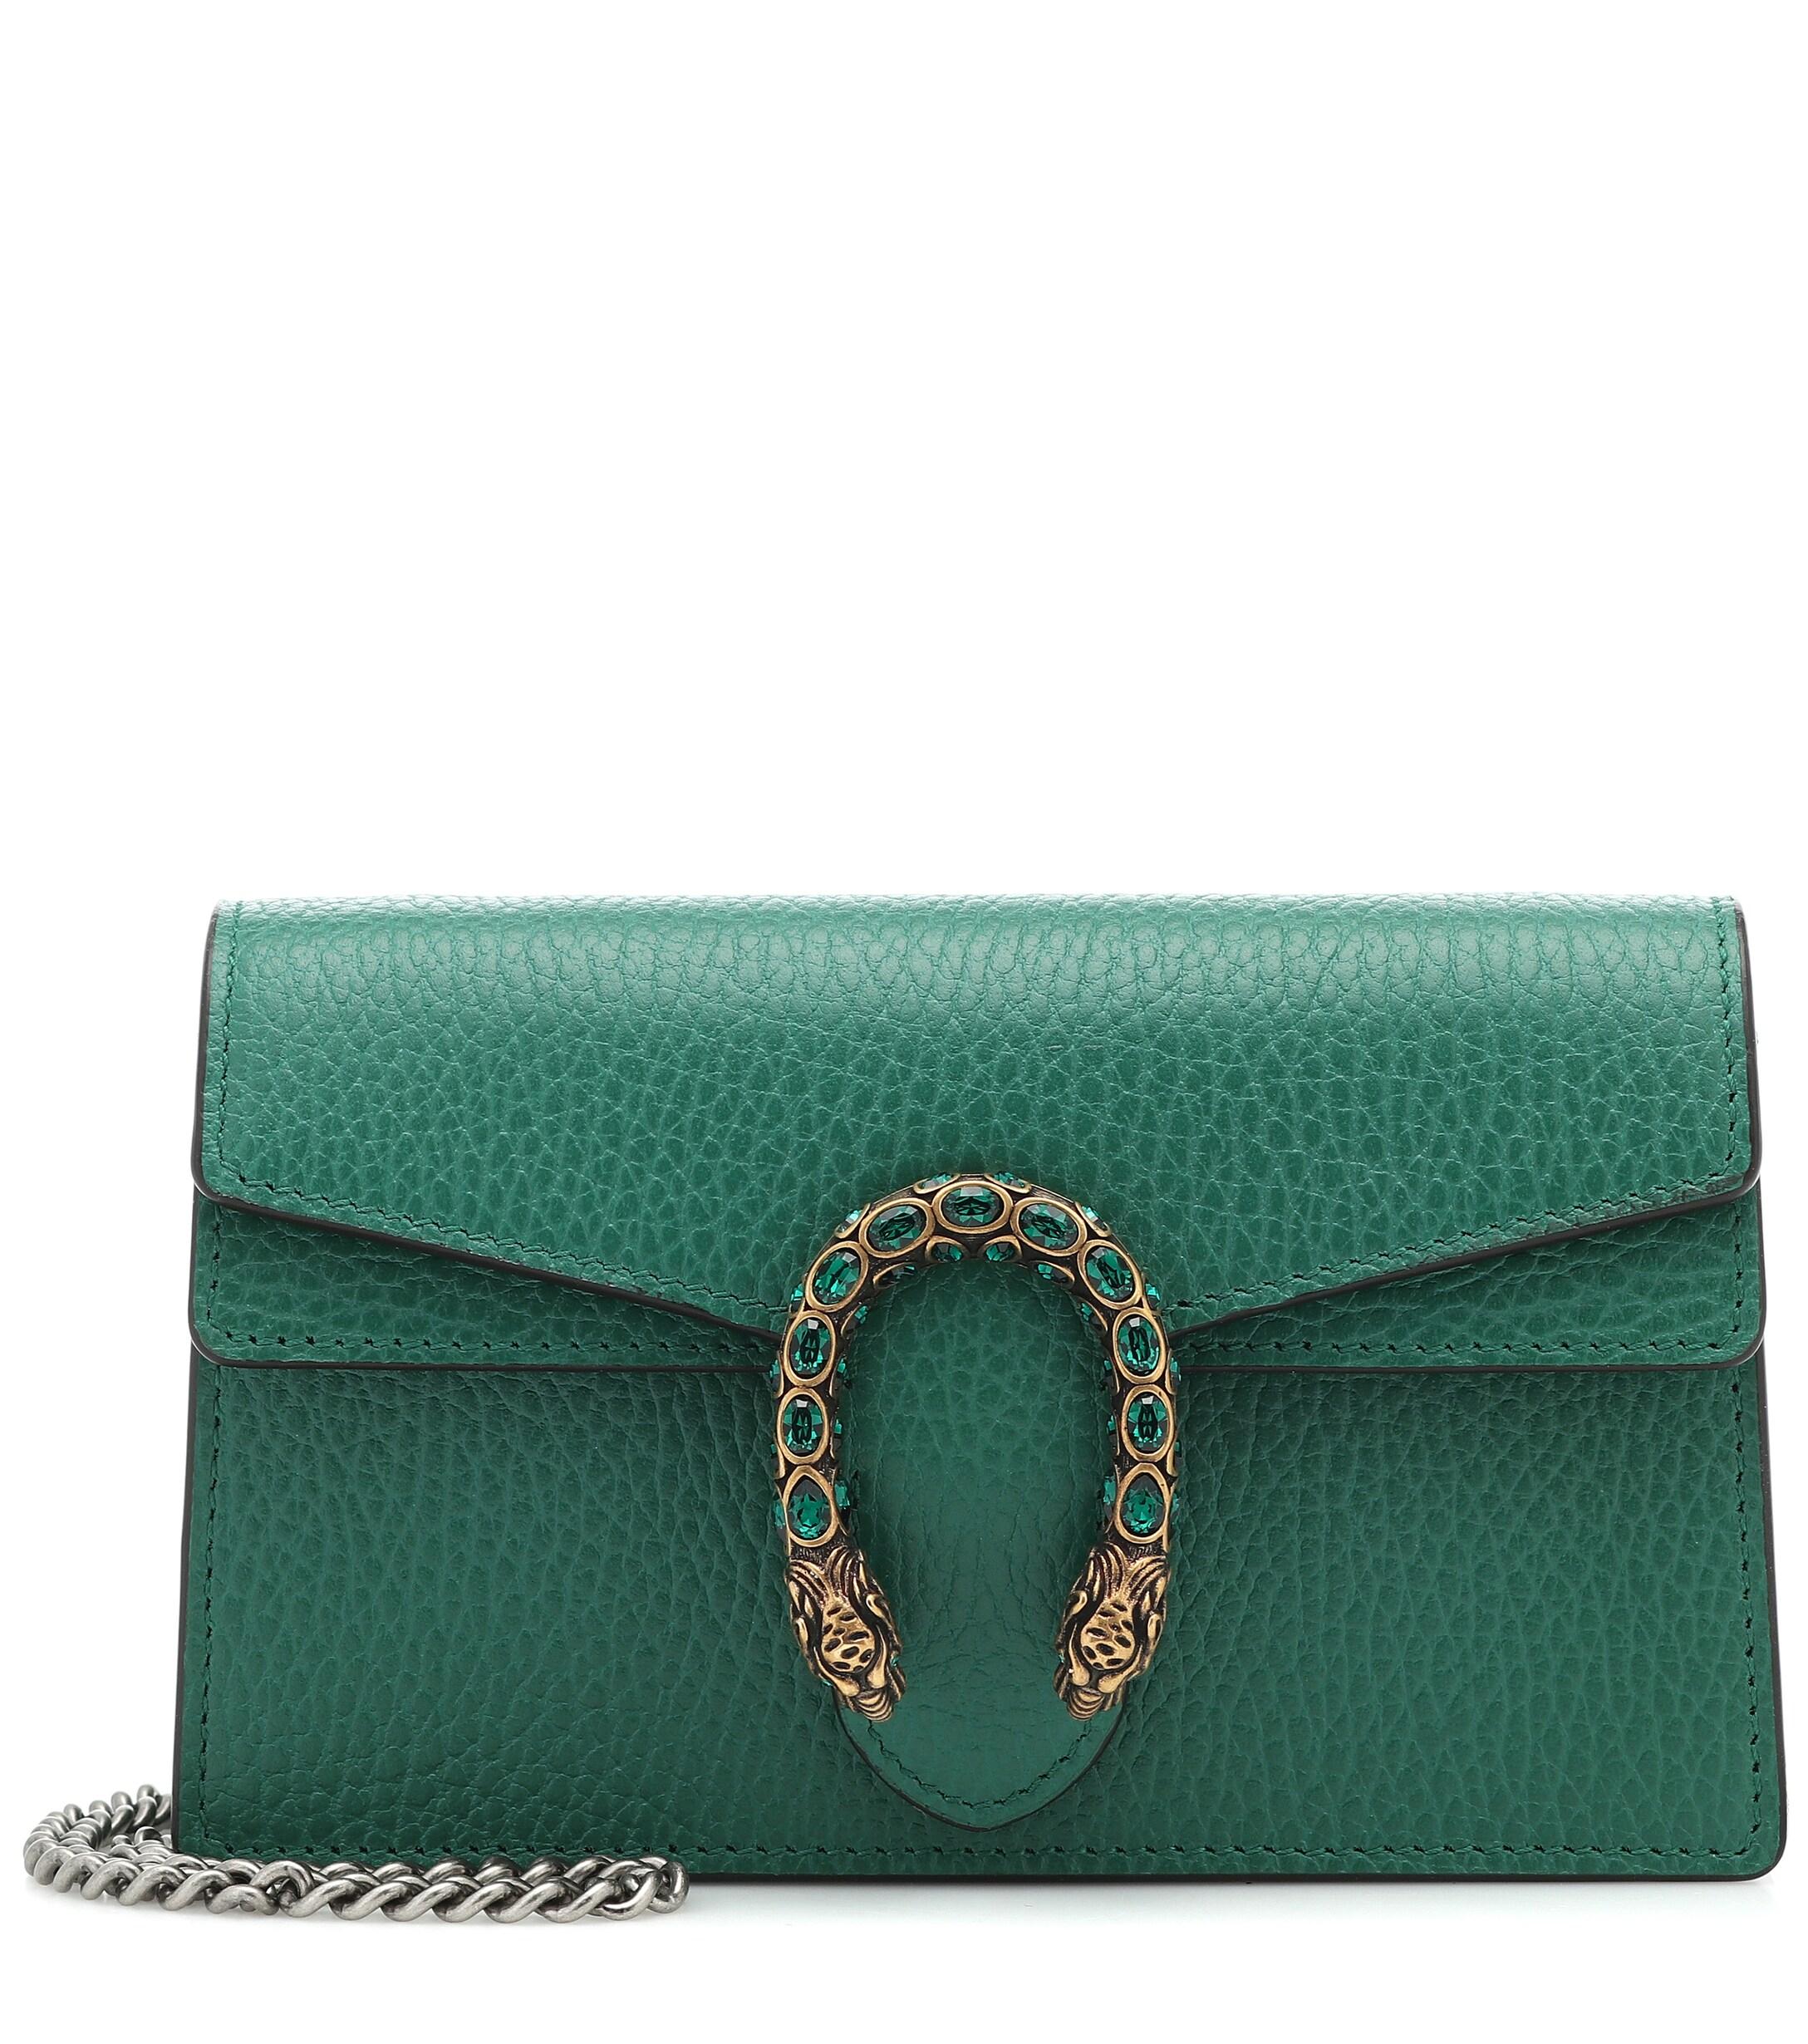 Gucci Dionysus Leather Super Mini Bag in Green - Lyst